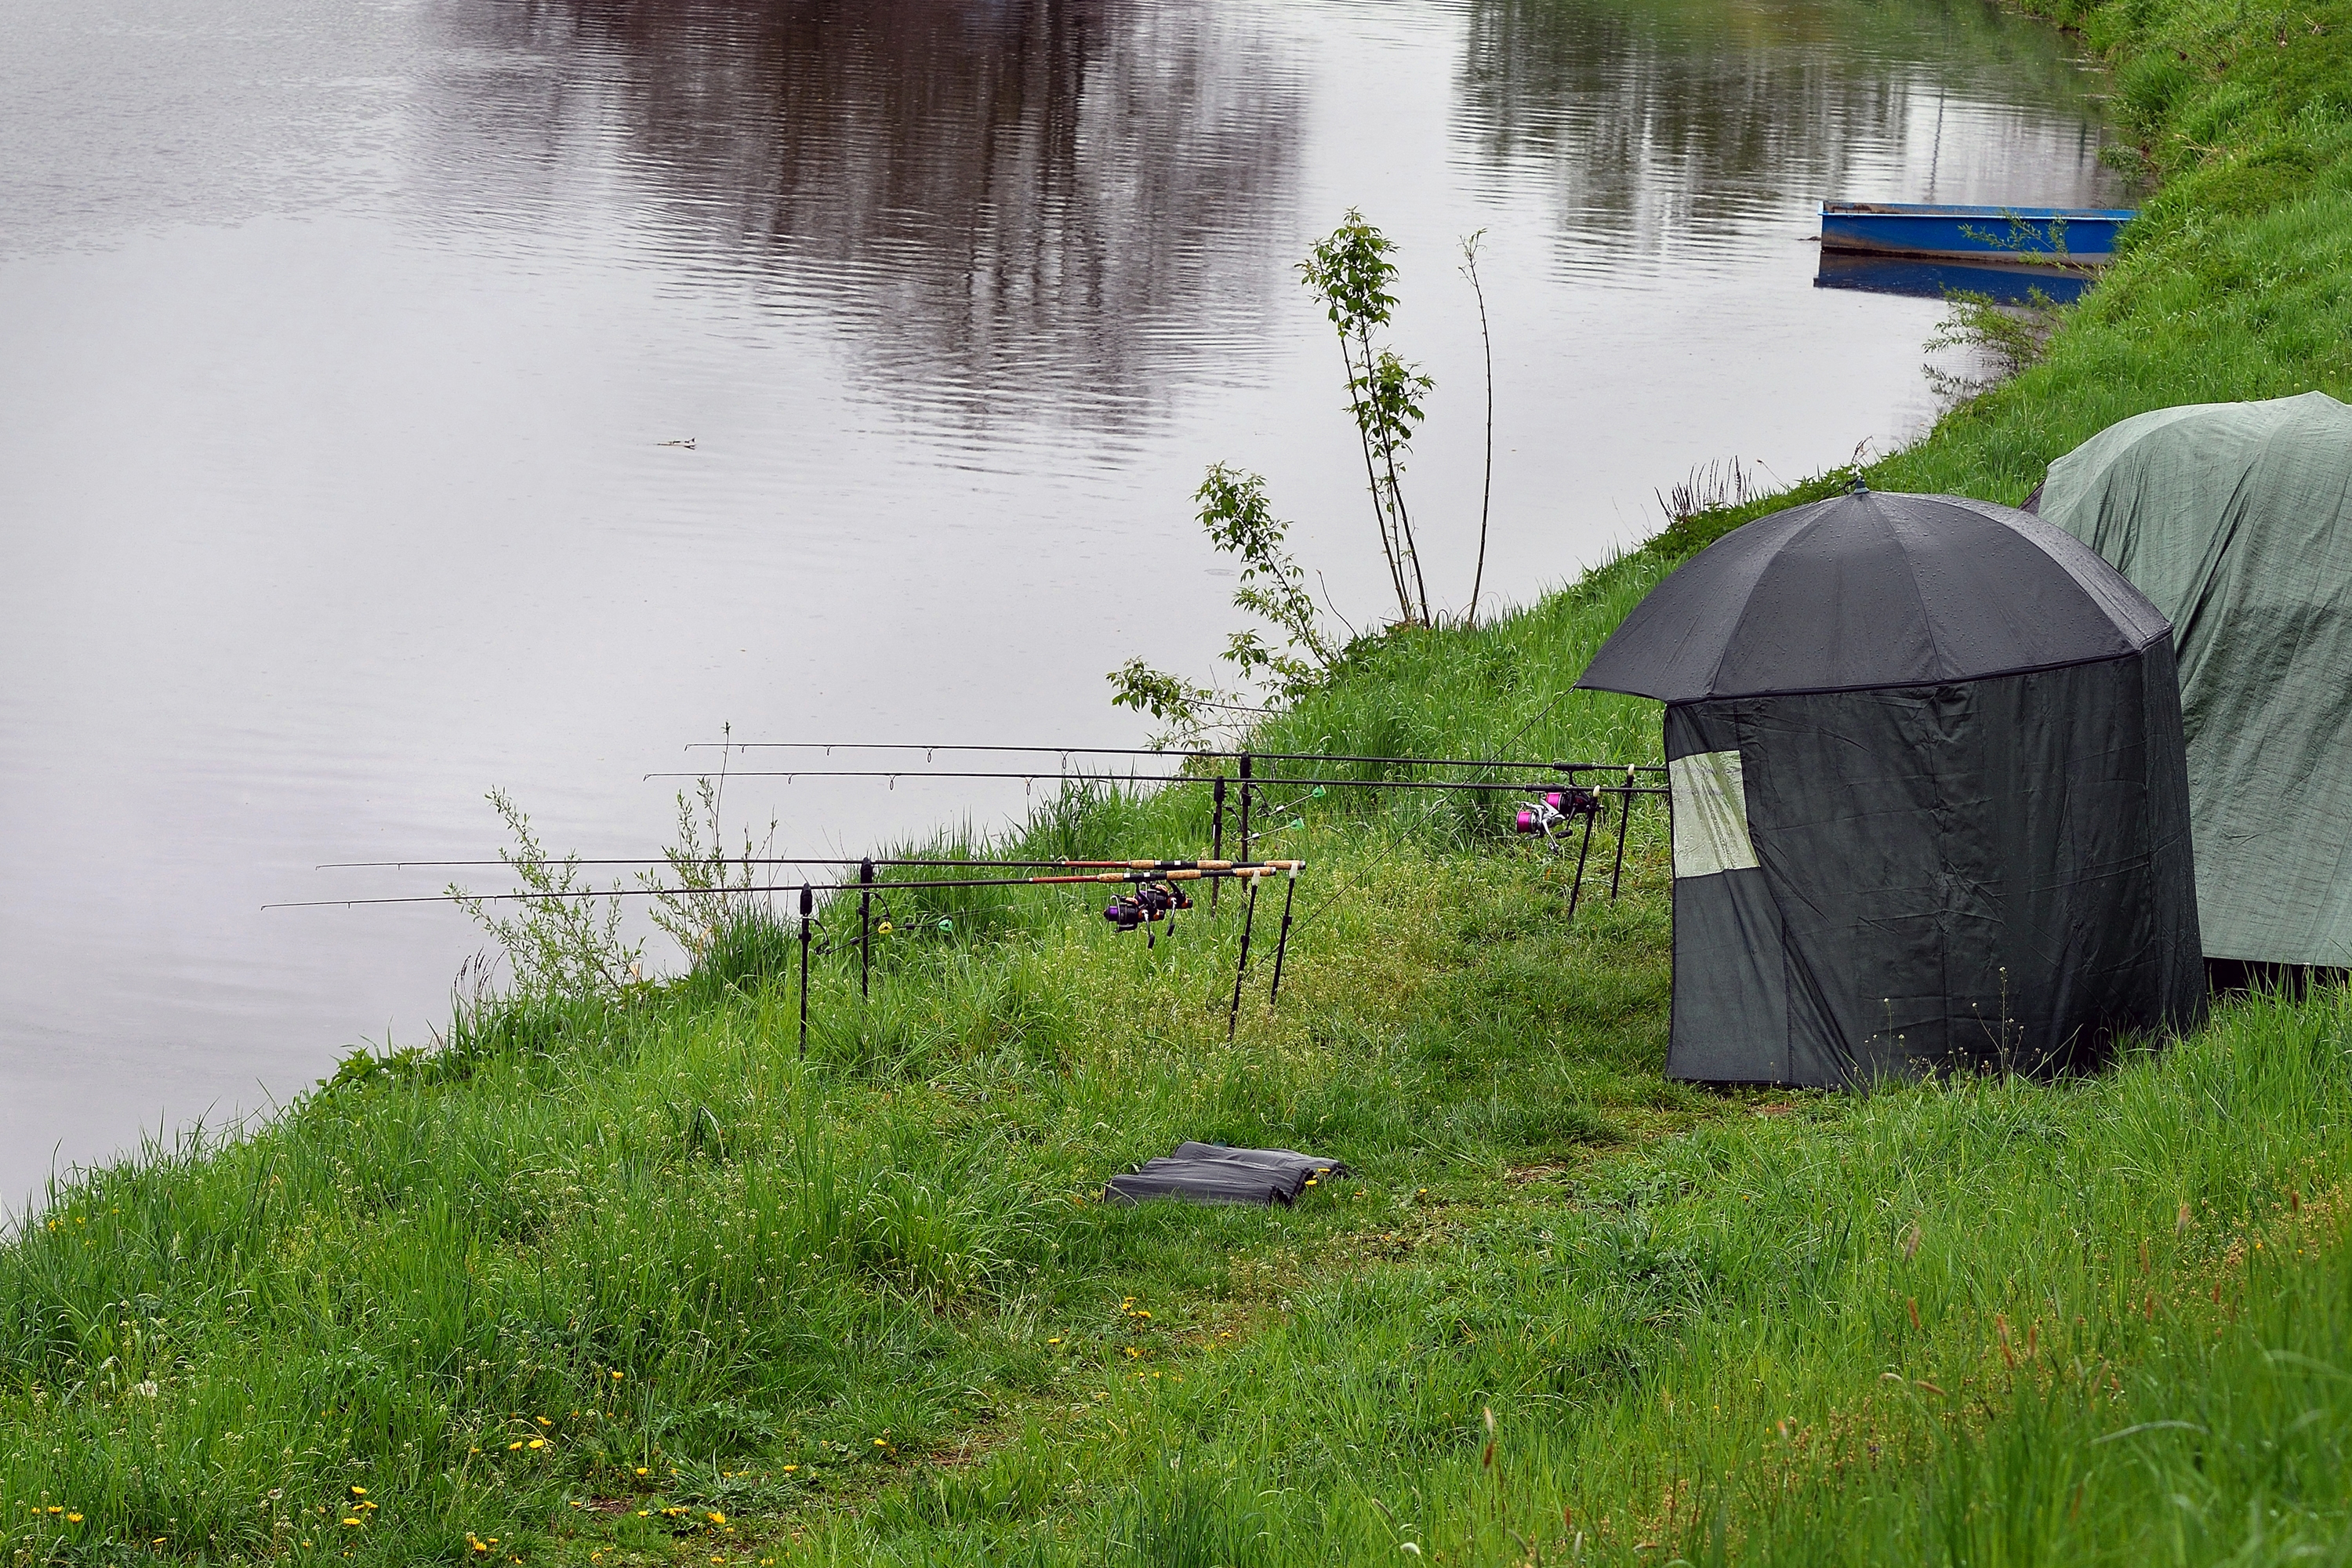 Speciālās teltis makšķernieku pasargā gan no lietus, gan vēja.